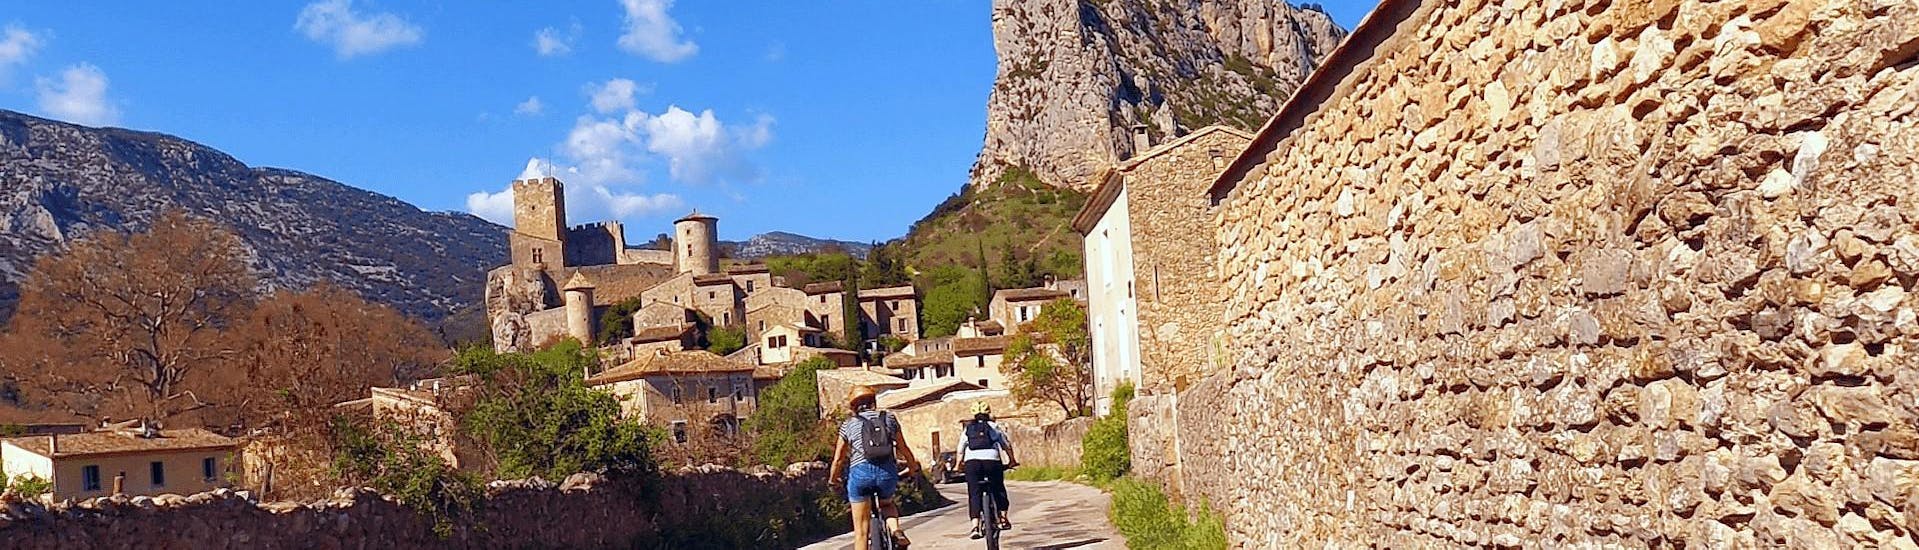 Alquiler de bicicleta en Saint-Jean-de-Buèges - Gorges de l'Hérault.